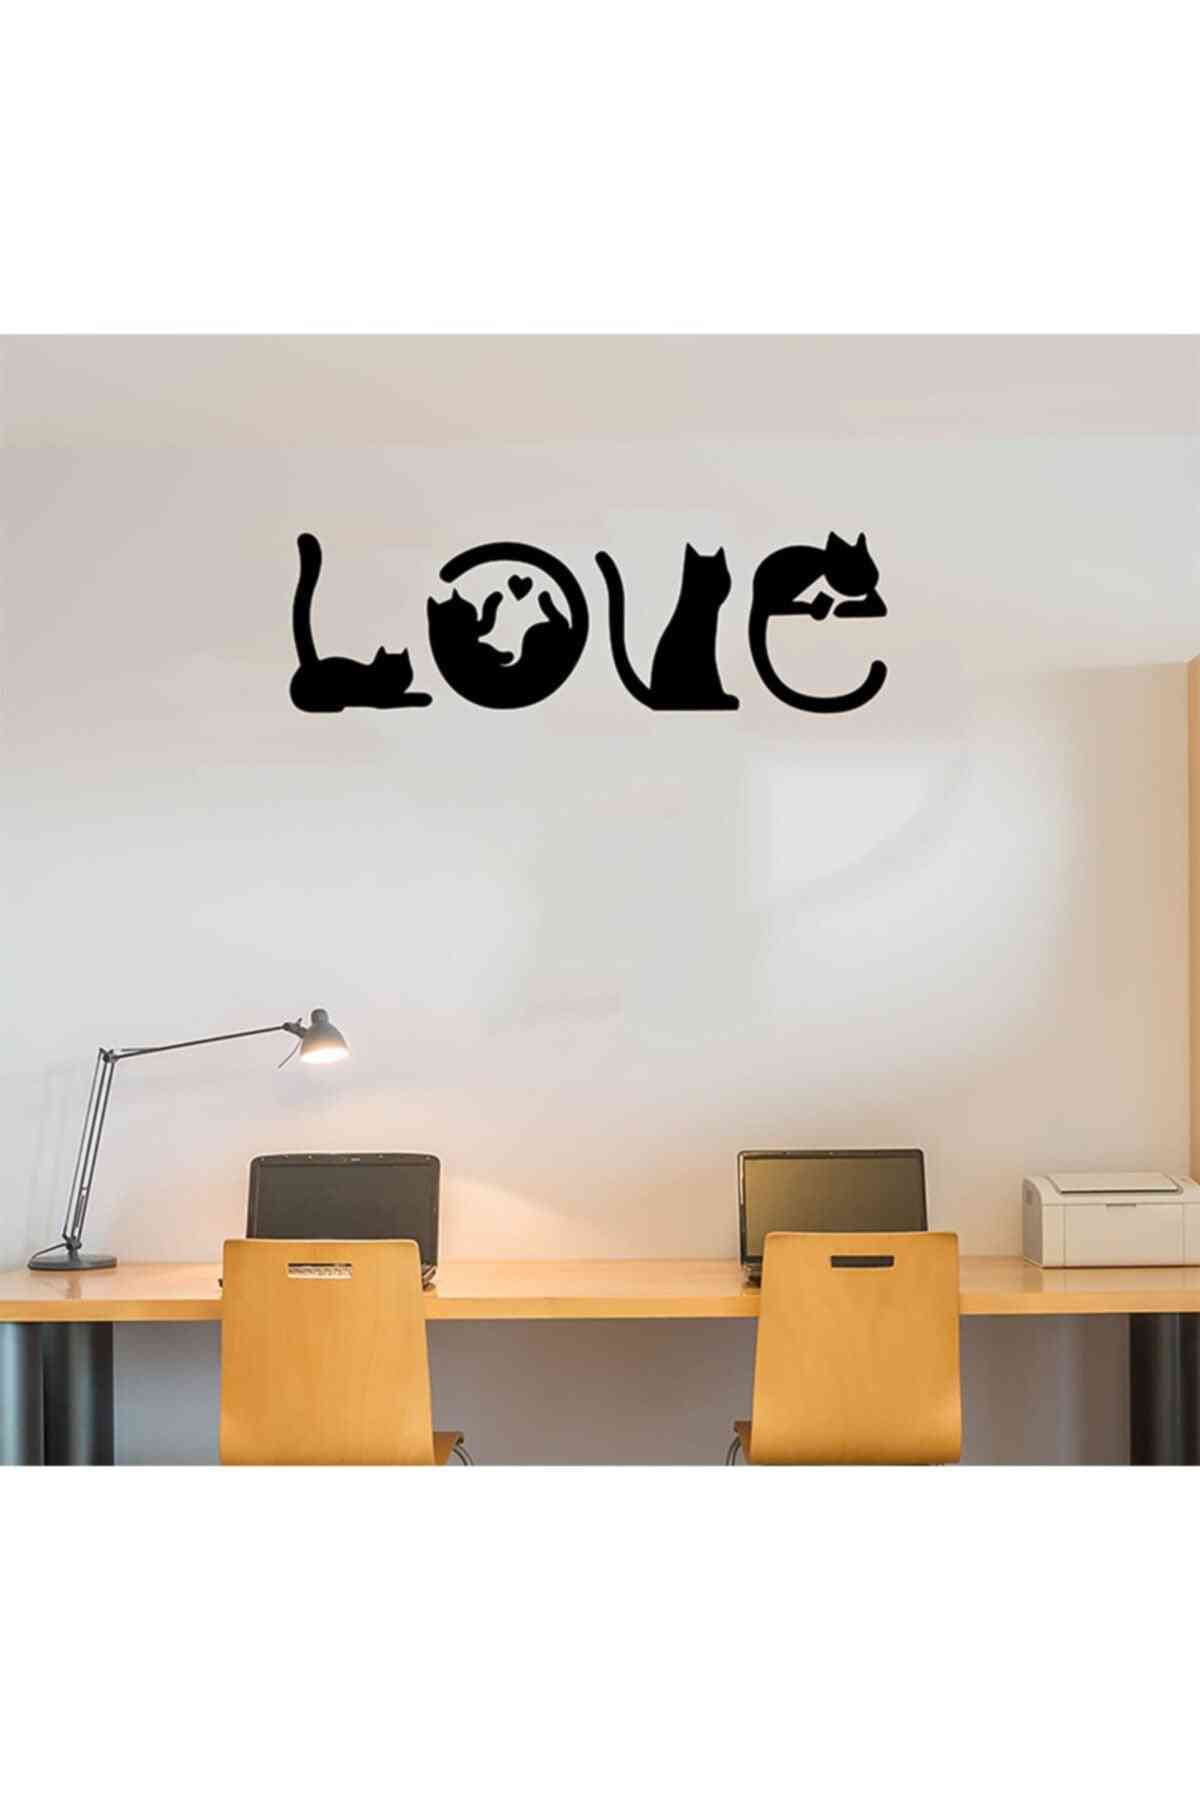 Love & cat design wallpeper - decorazione della parete